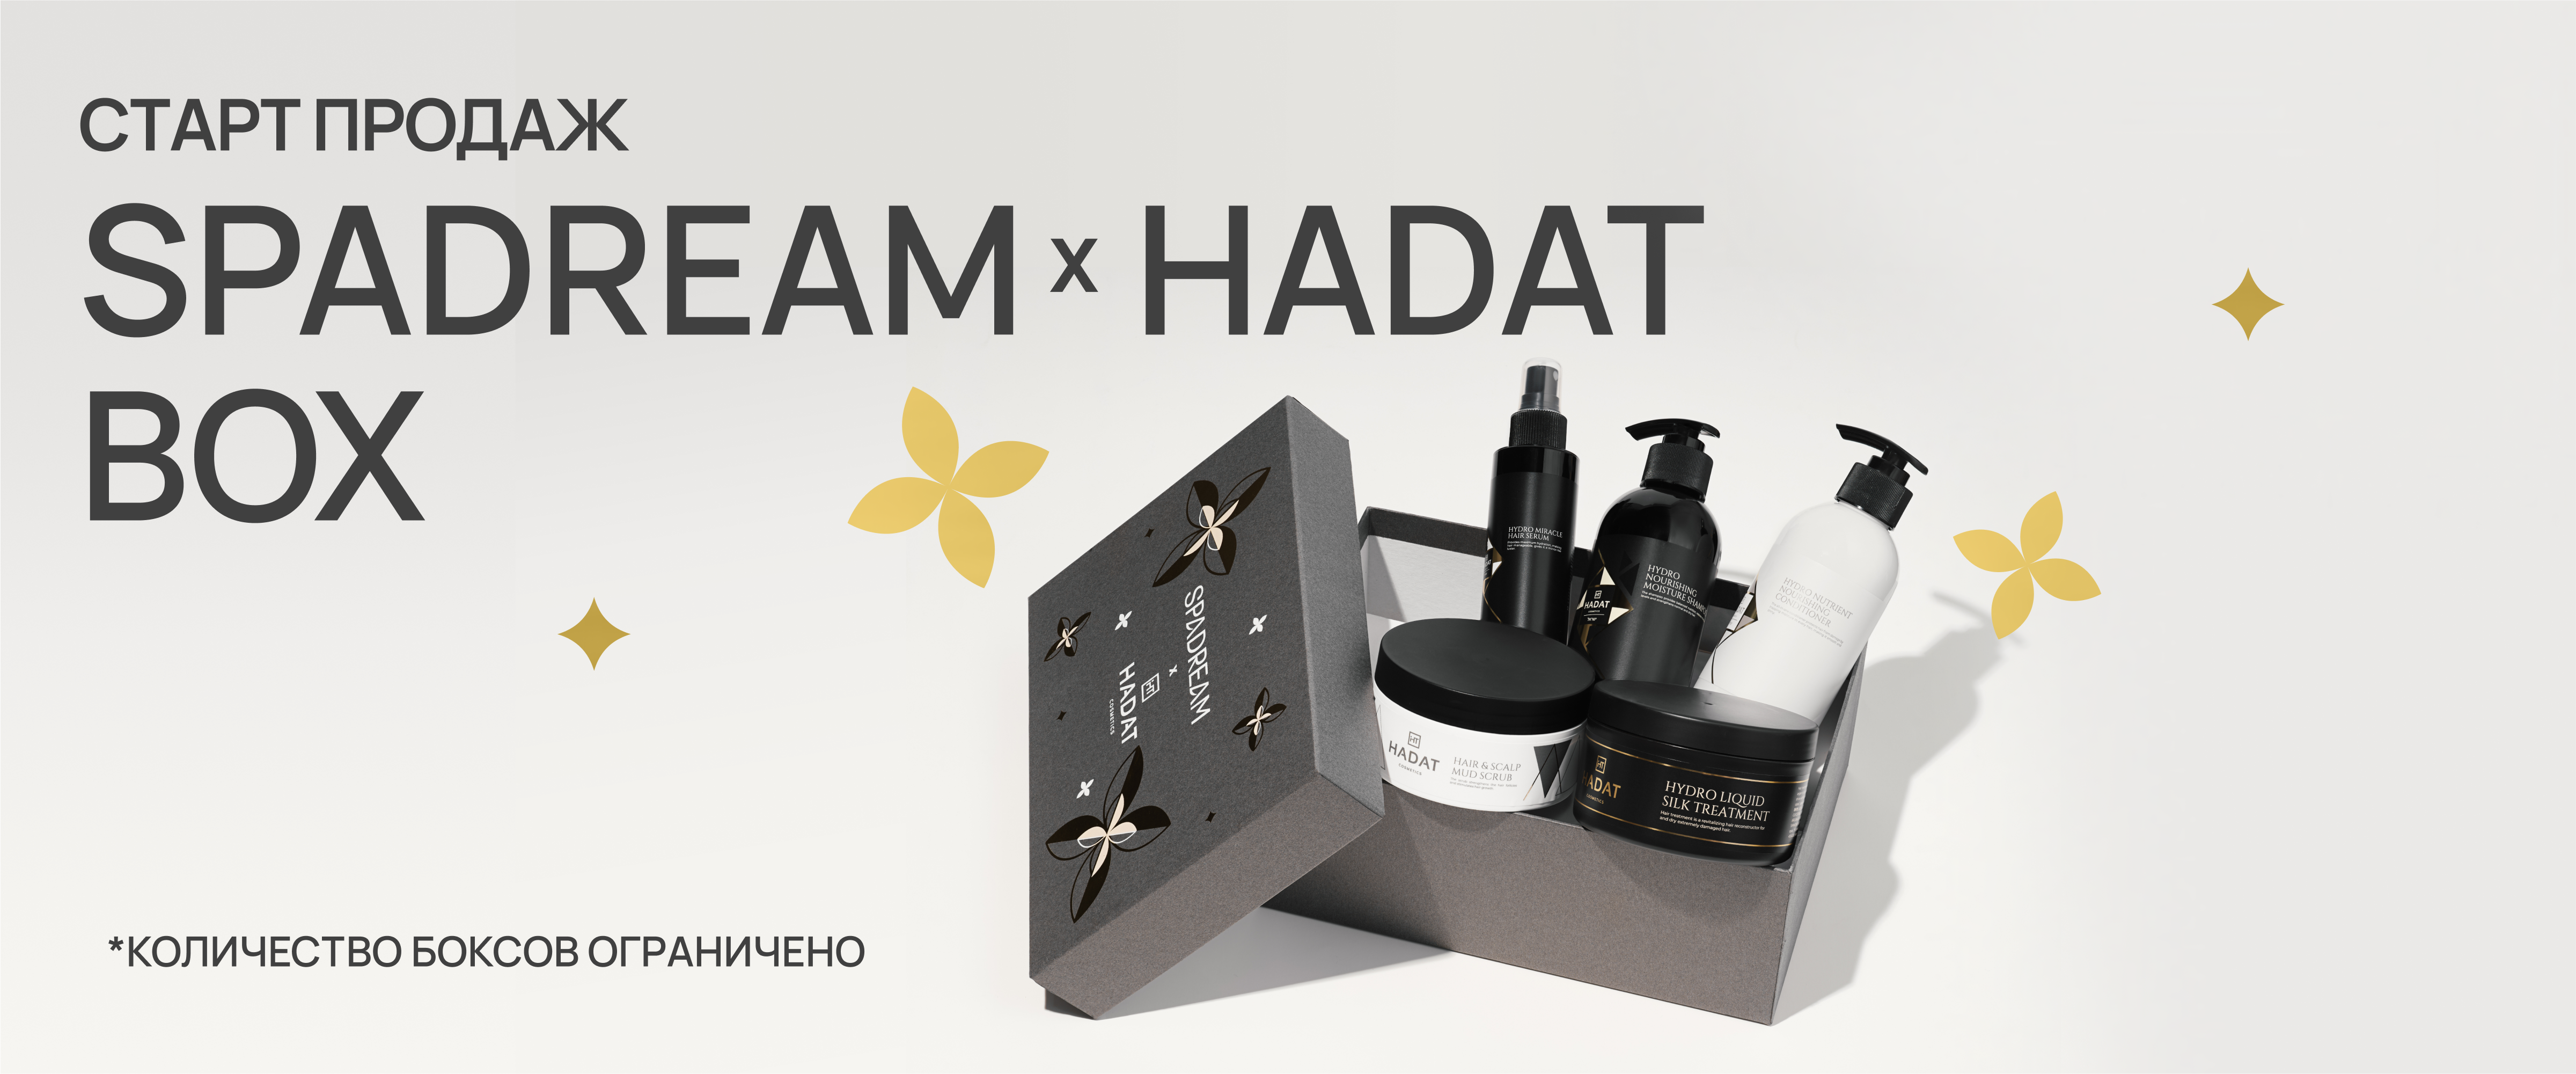 Hadat Box  - интернет-магазин профессиональной косметики Spadream, изображение 55407